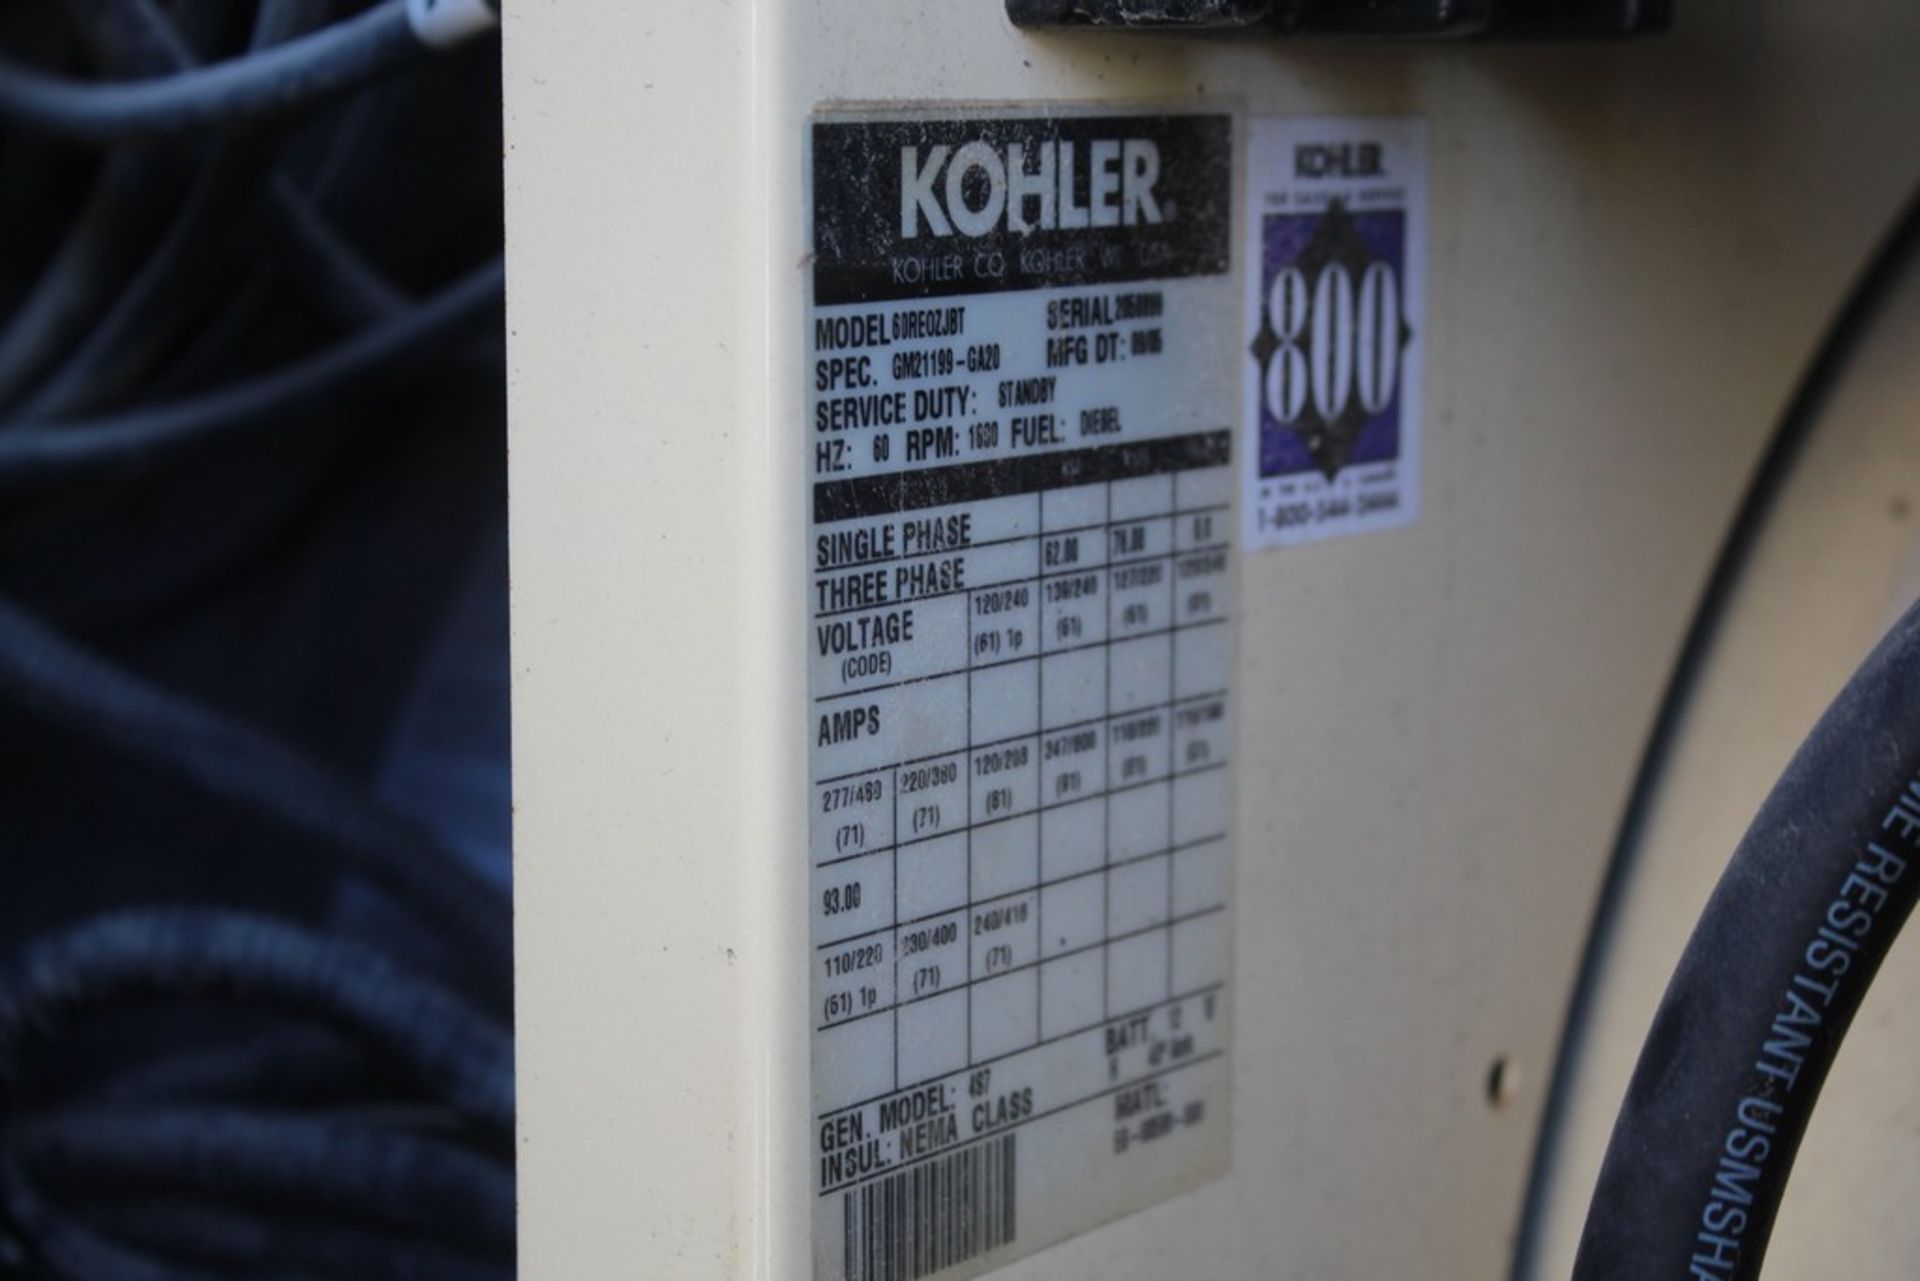 KOHLER 56 KW/60 KVA, MODEL 60RE0ZJBT TOWABLE GENERATOR, S/N 2058899, 6267 HOURS ON METER, ON - Image 4 of 7